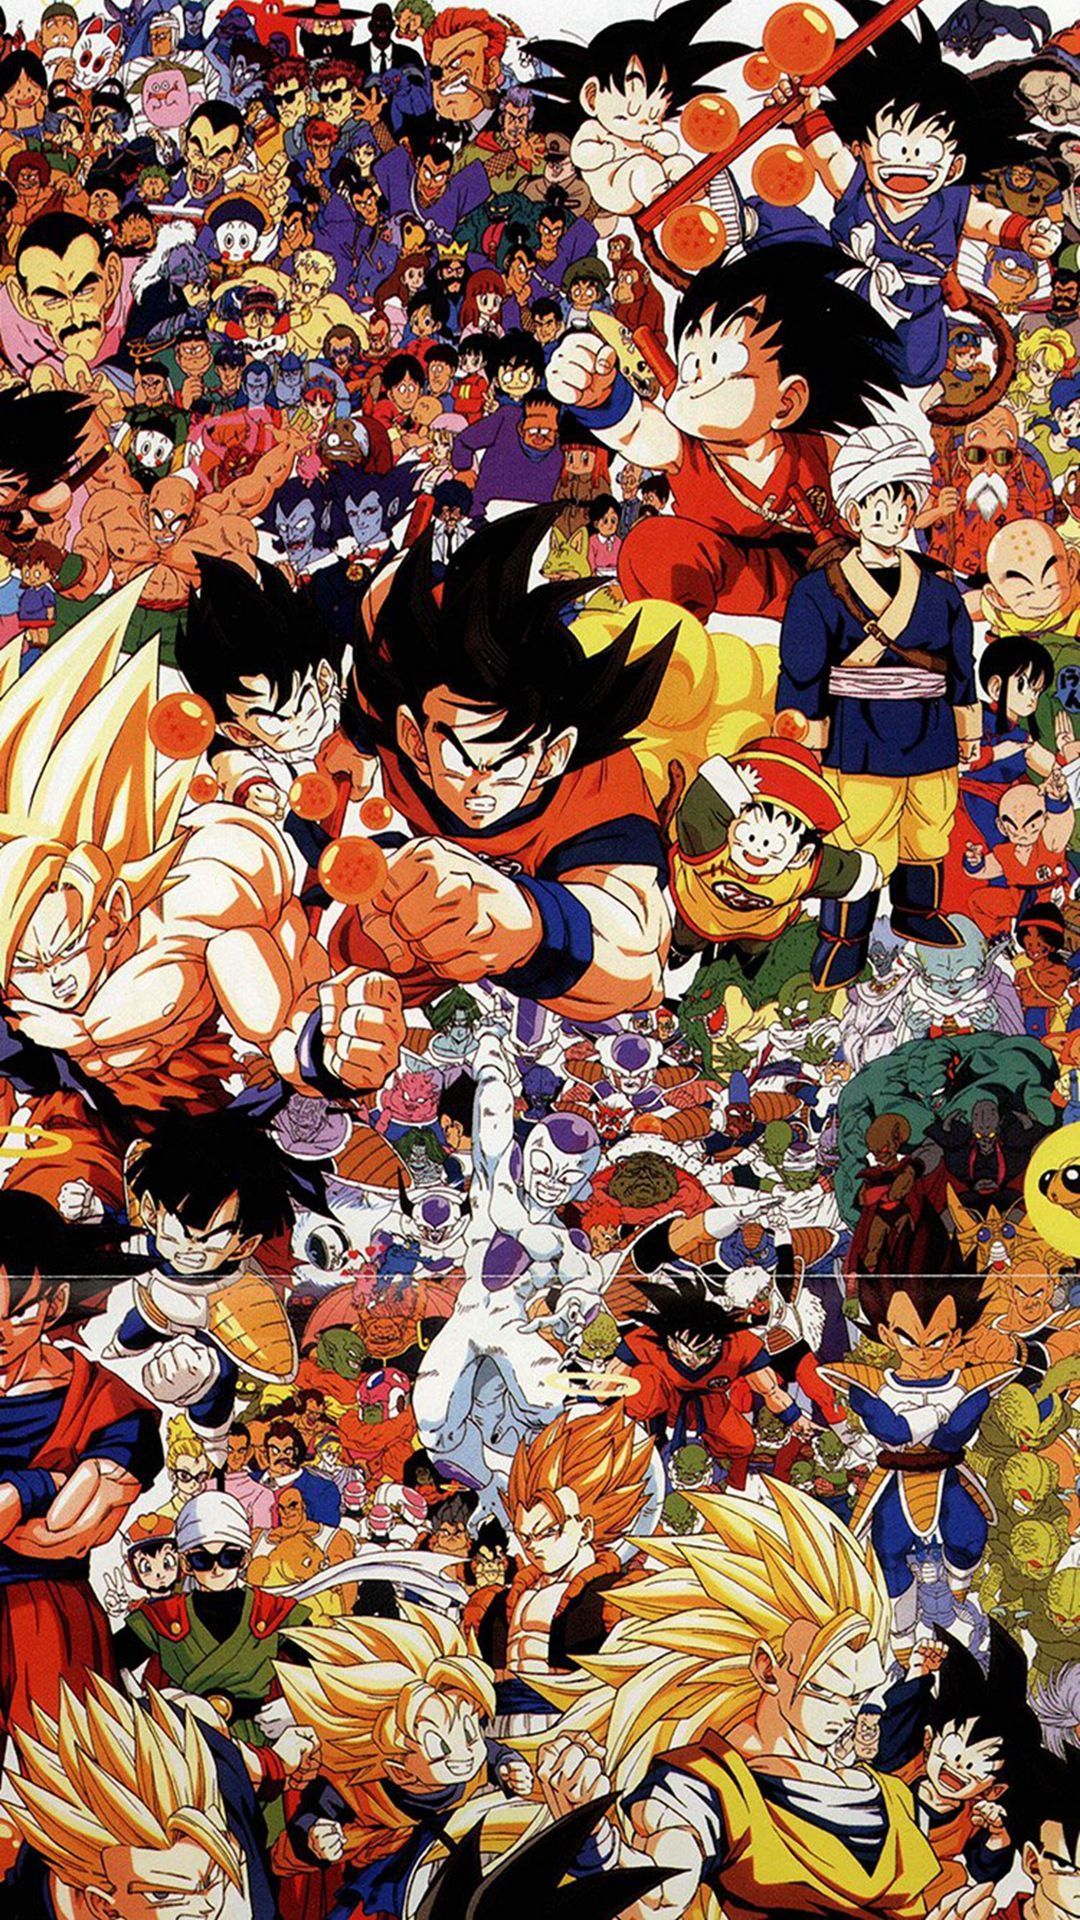 Meeyi Uones Dragon Ball Z Wallpapers Goku 2 Case Iphone 7 Plus